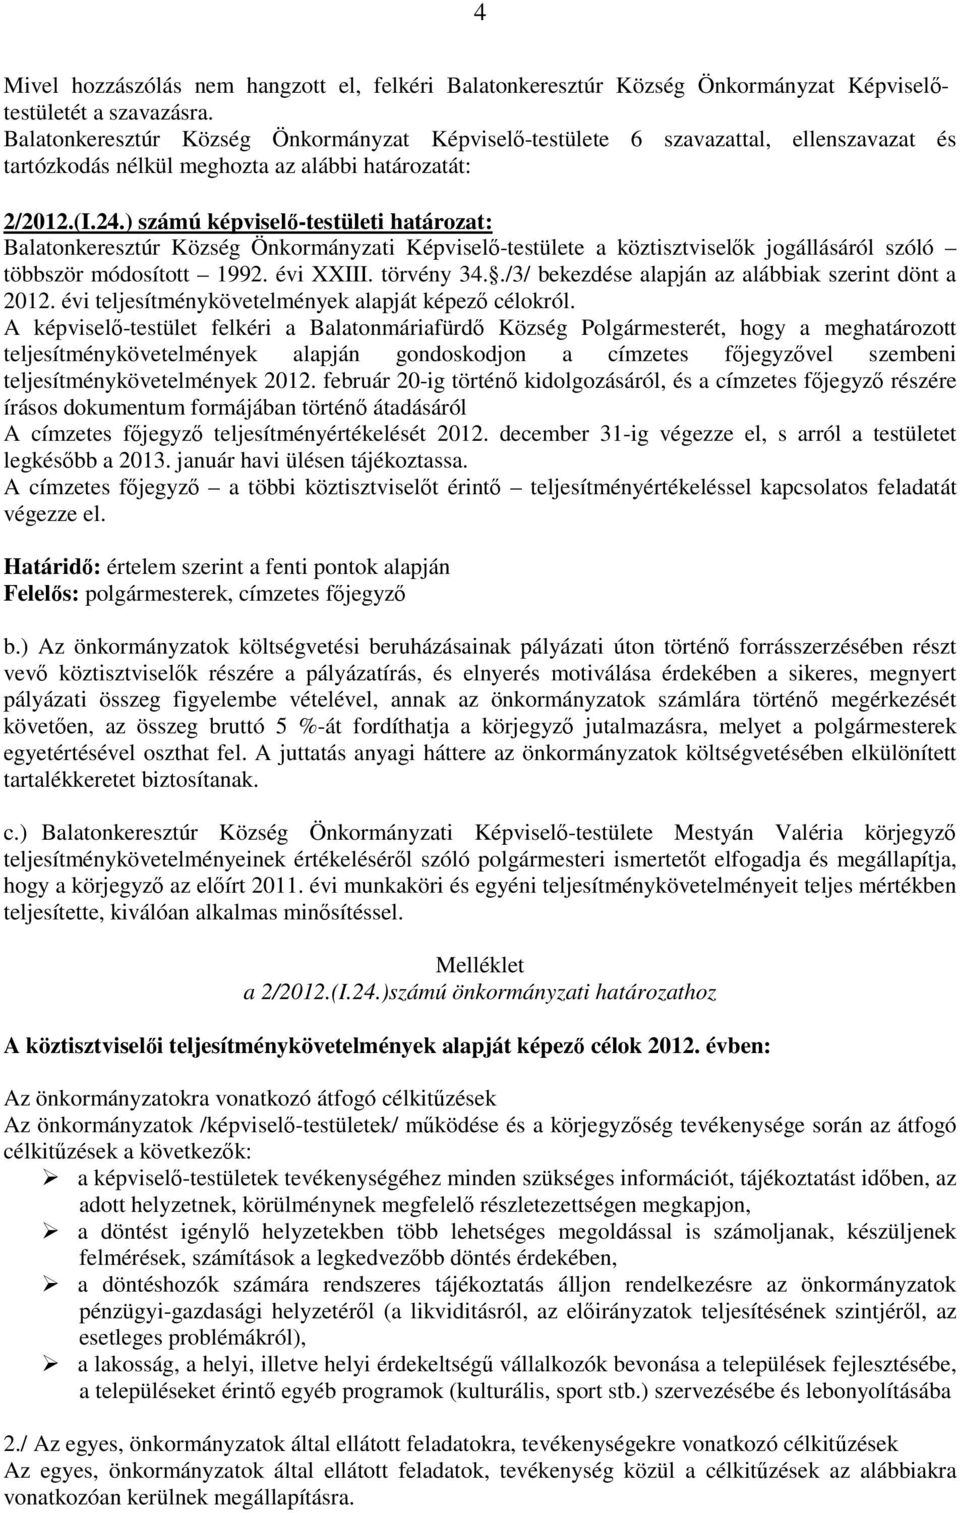 ) számú képviselı-testületi határozat: Balatonkeresztúr Község Önkormányzati Képviselı-testülete a köztisztviselık jogállásáról szóló többször módosított 1992. évi XXIII. törvény 34.